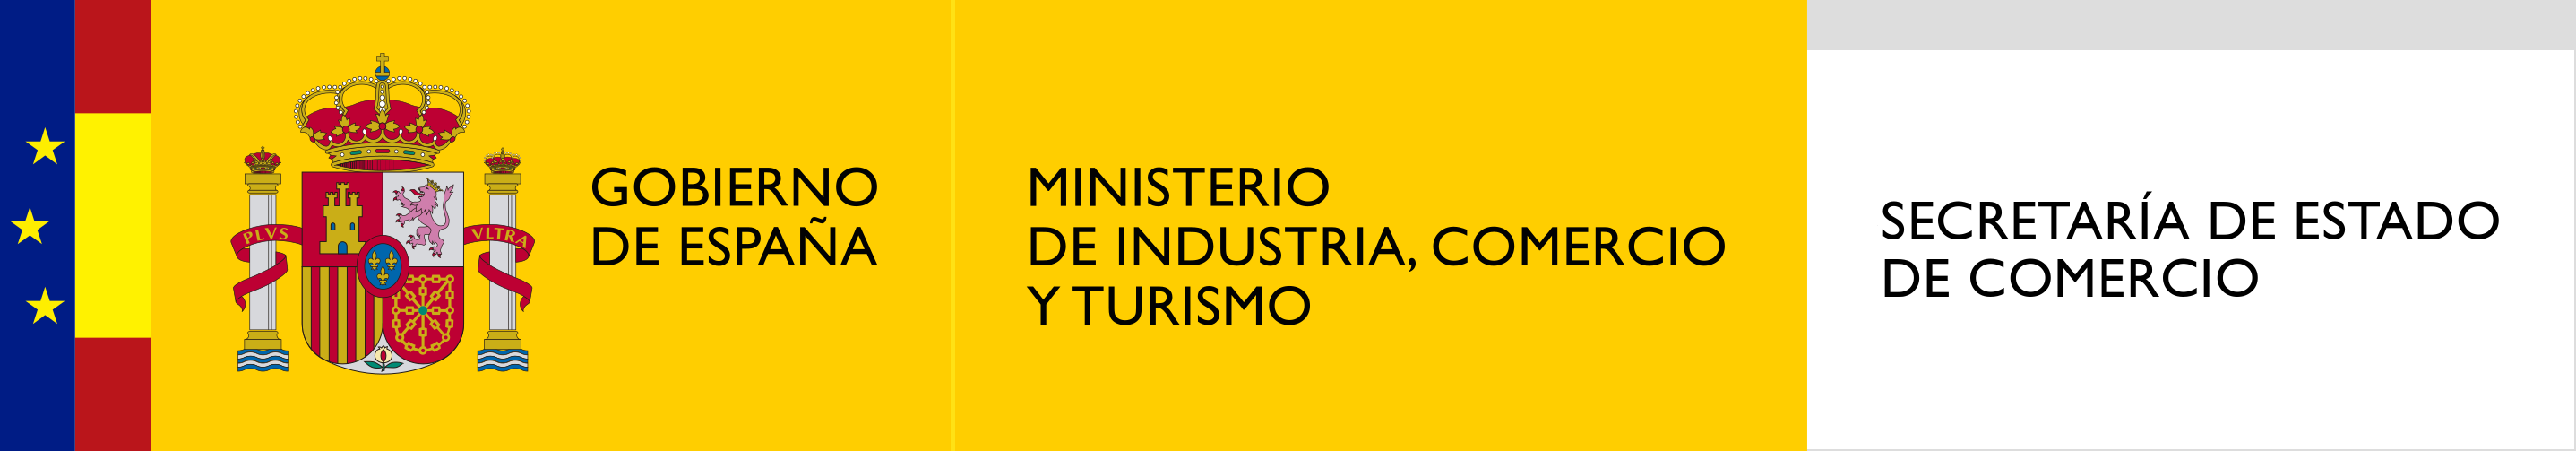 logotipo_de_la_secretara_de_estado_de_comercio.png